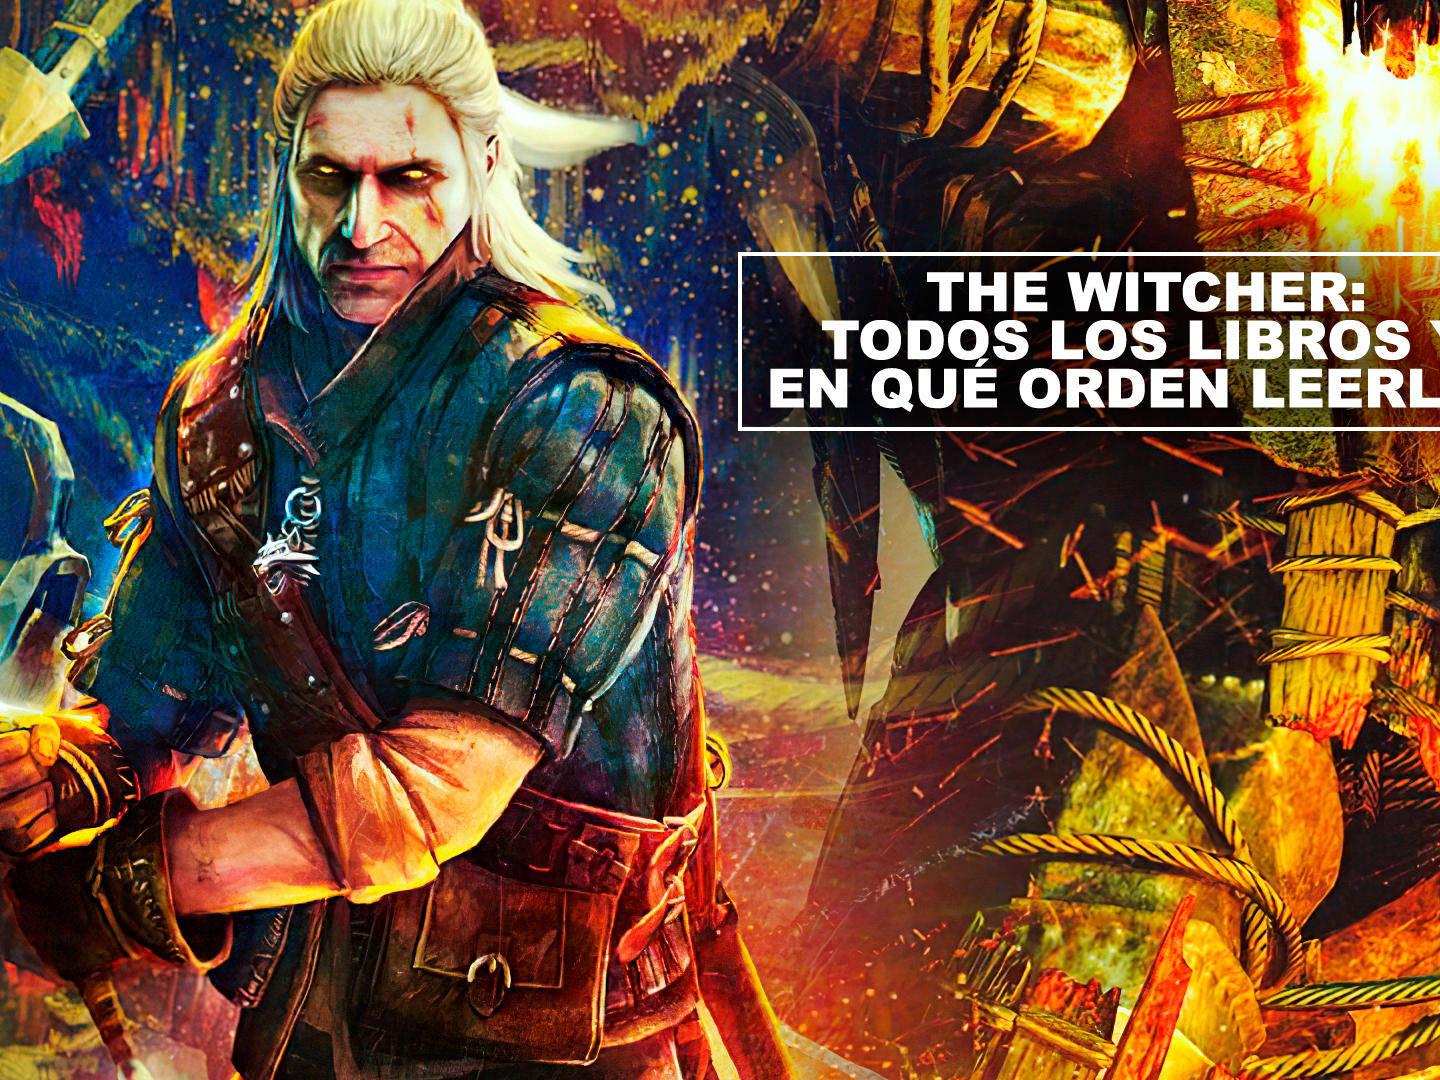 The Witcher: este es el orden de los libros